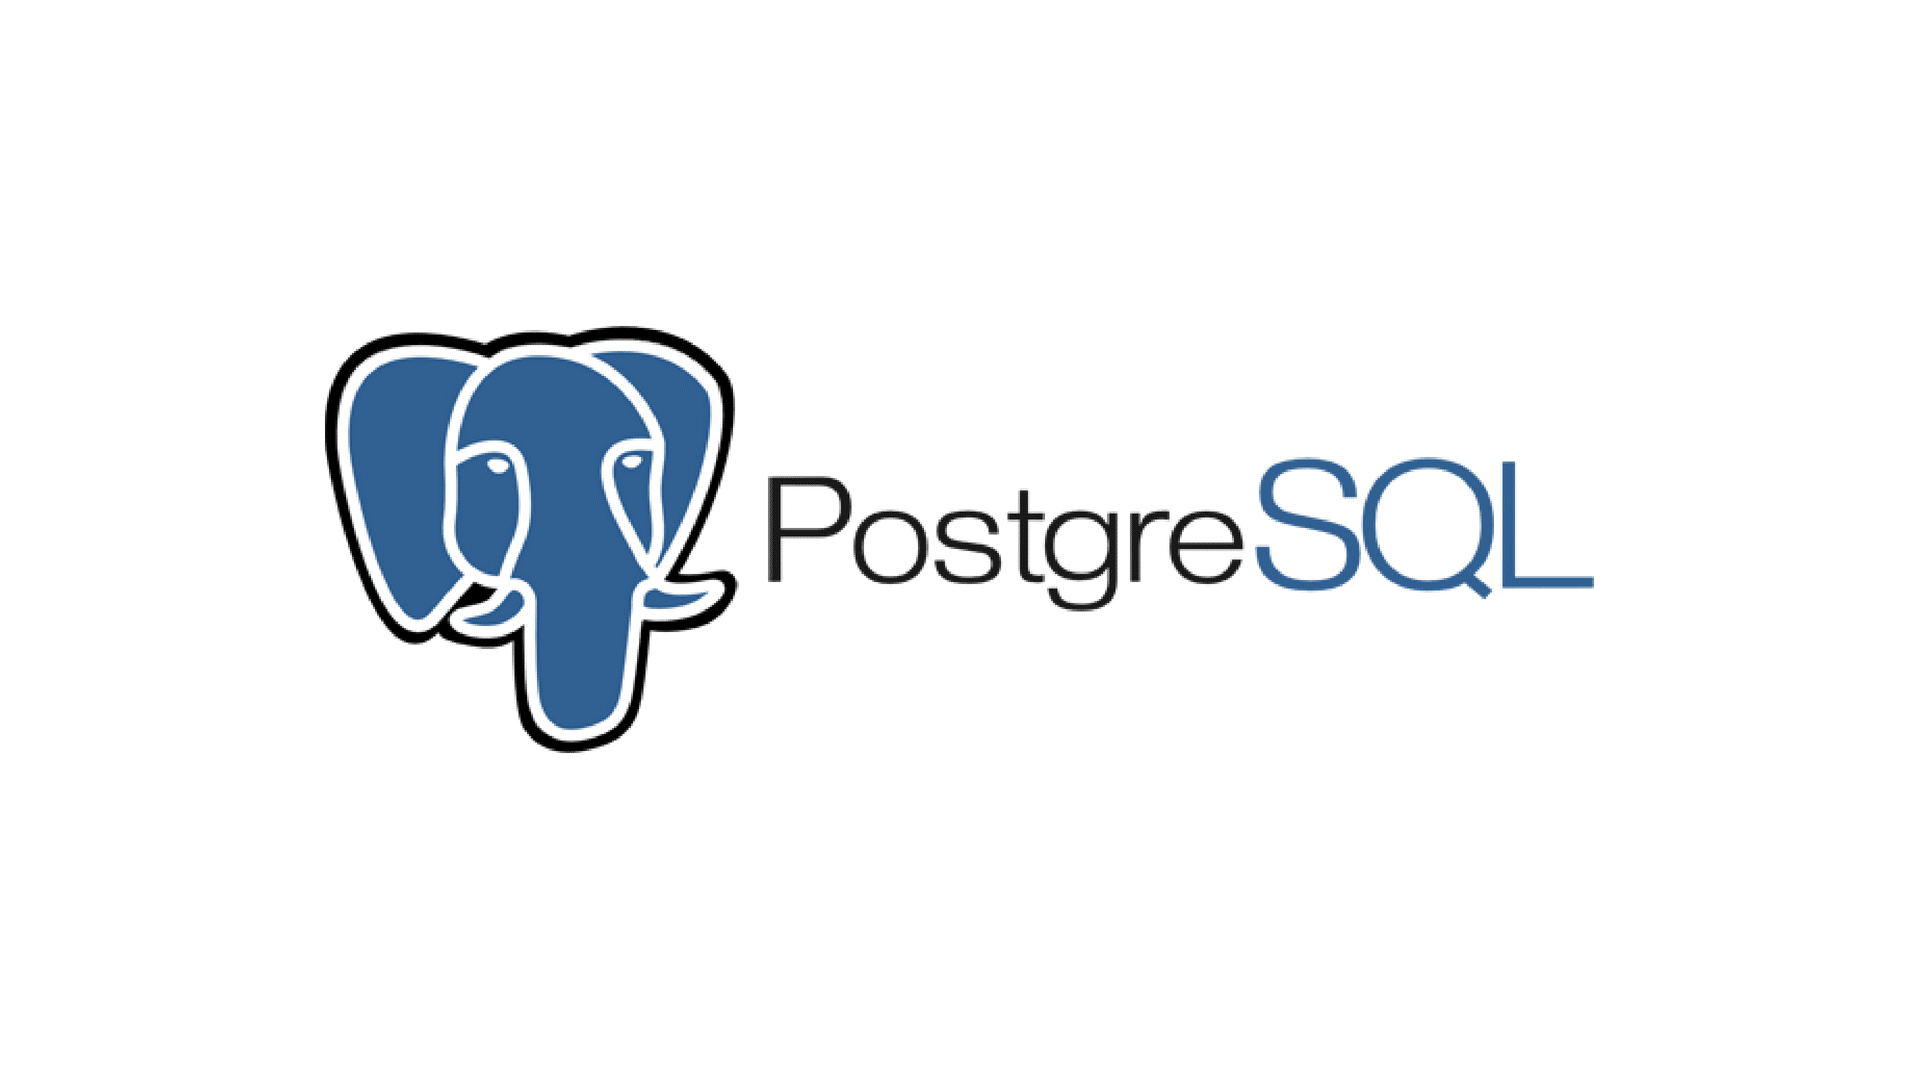 Let's check what's new in PostgreSQL 15!